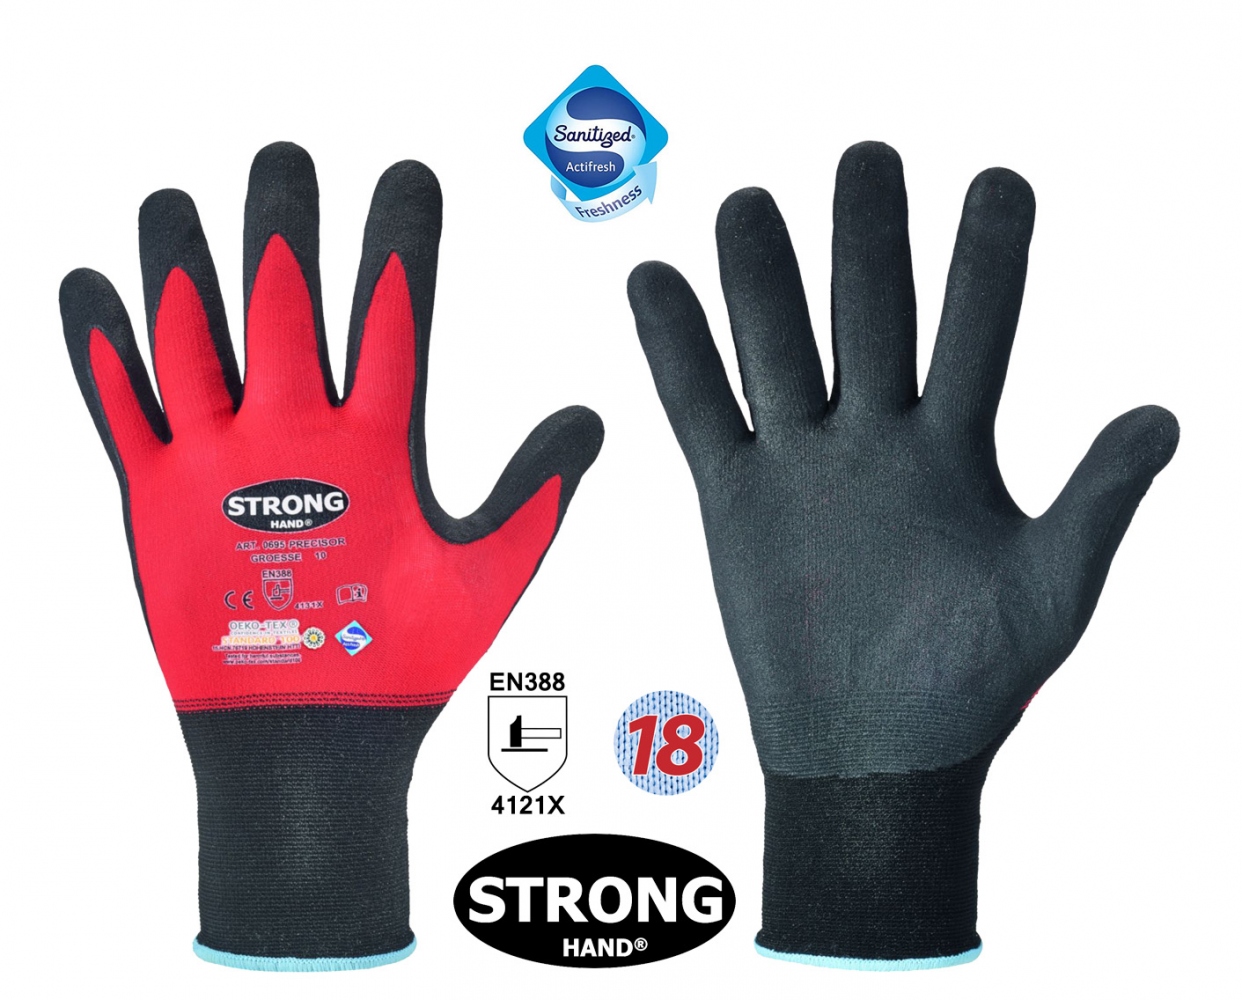 pics/Feldtmann/2019/Handschuhe/stronghand-0695-precisor-nitrile-safety-gloves-red-sanitized.jpg